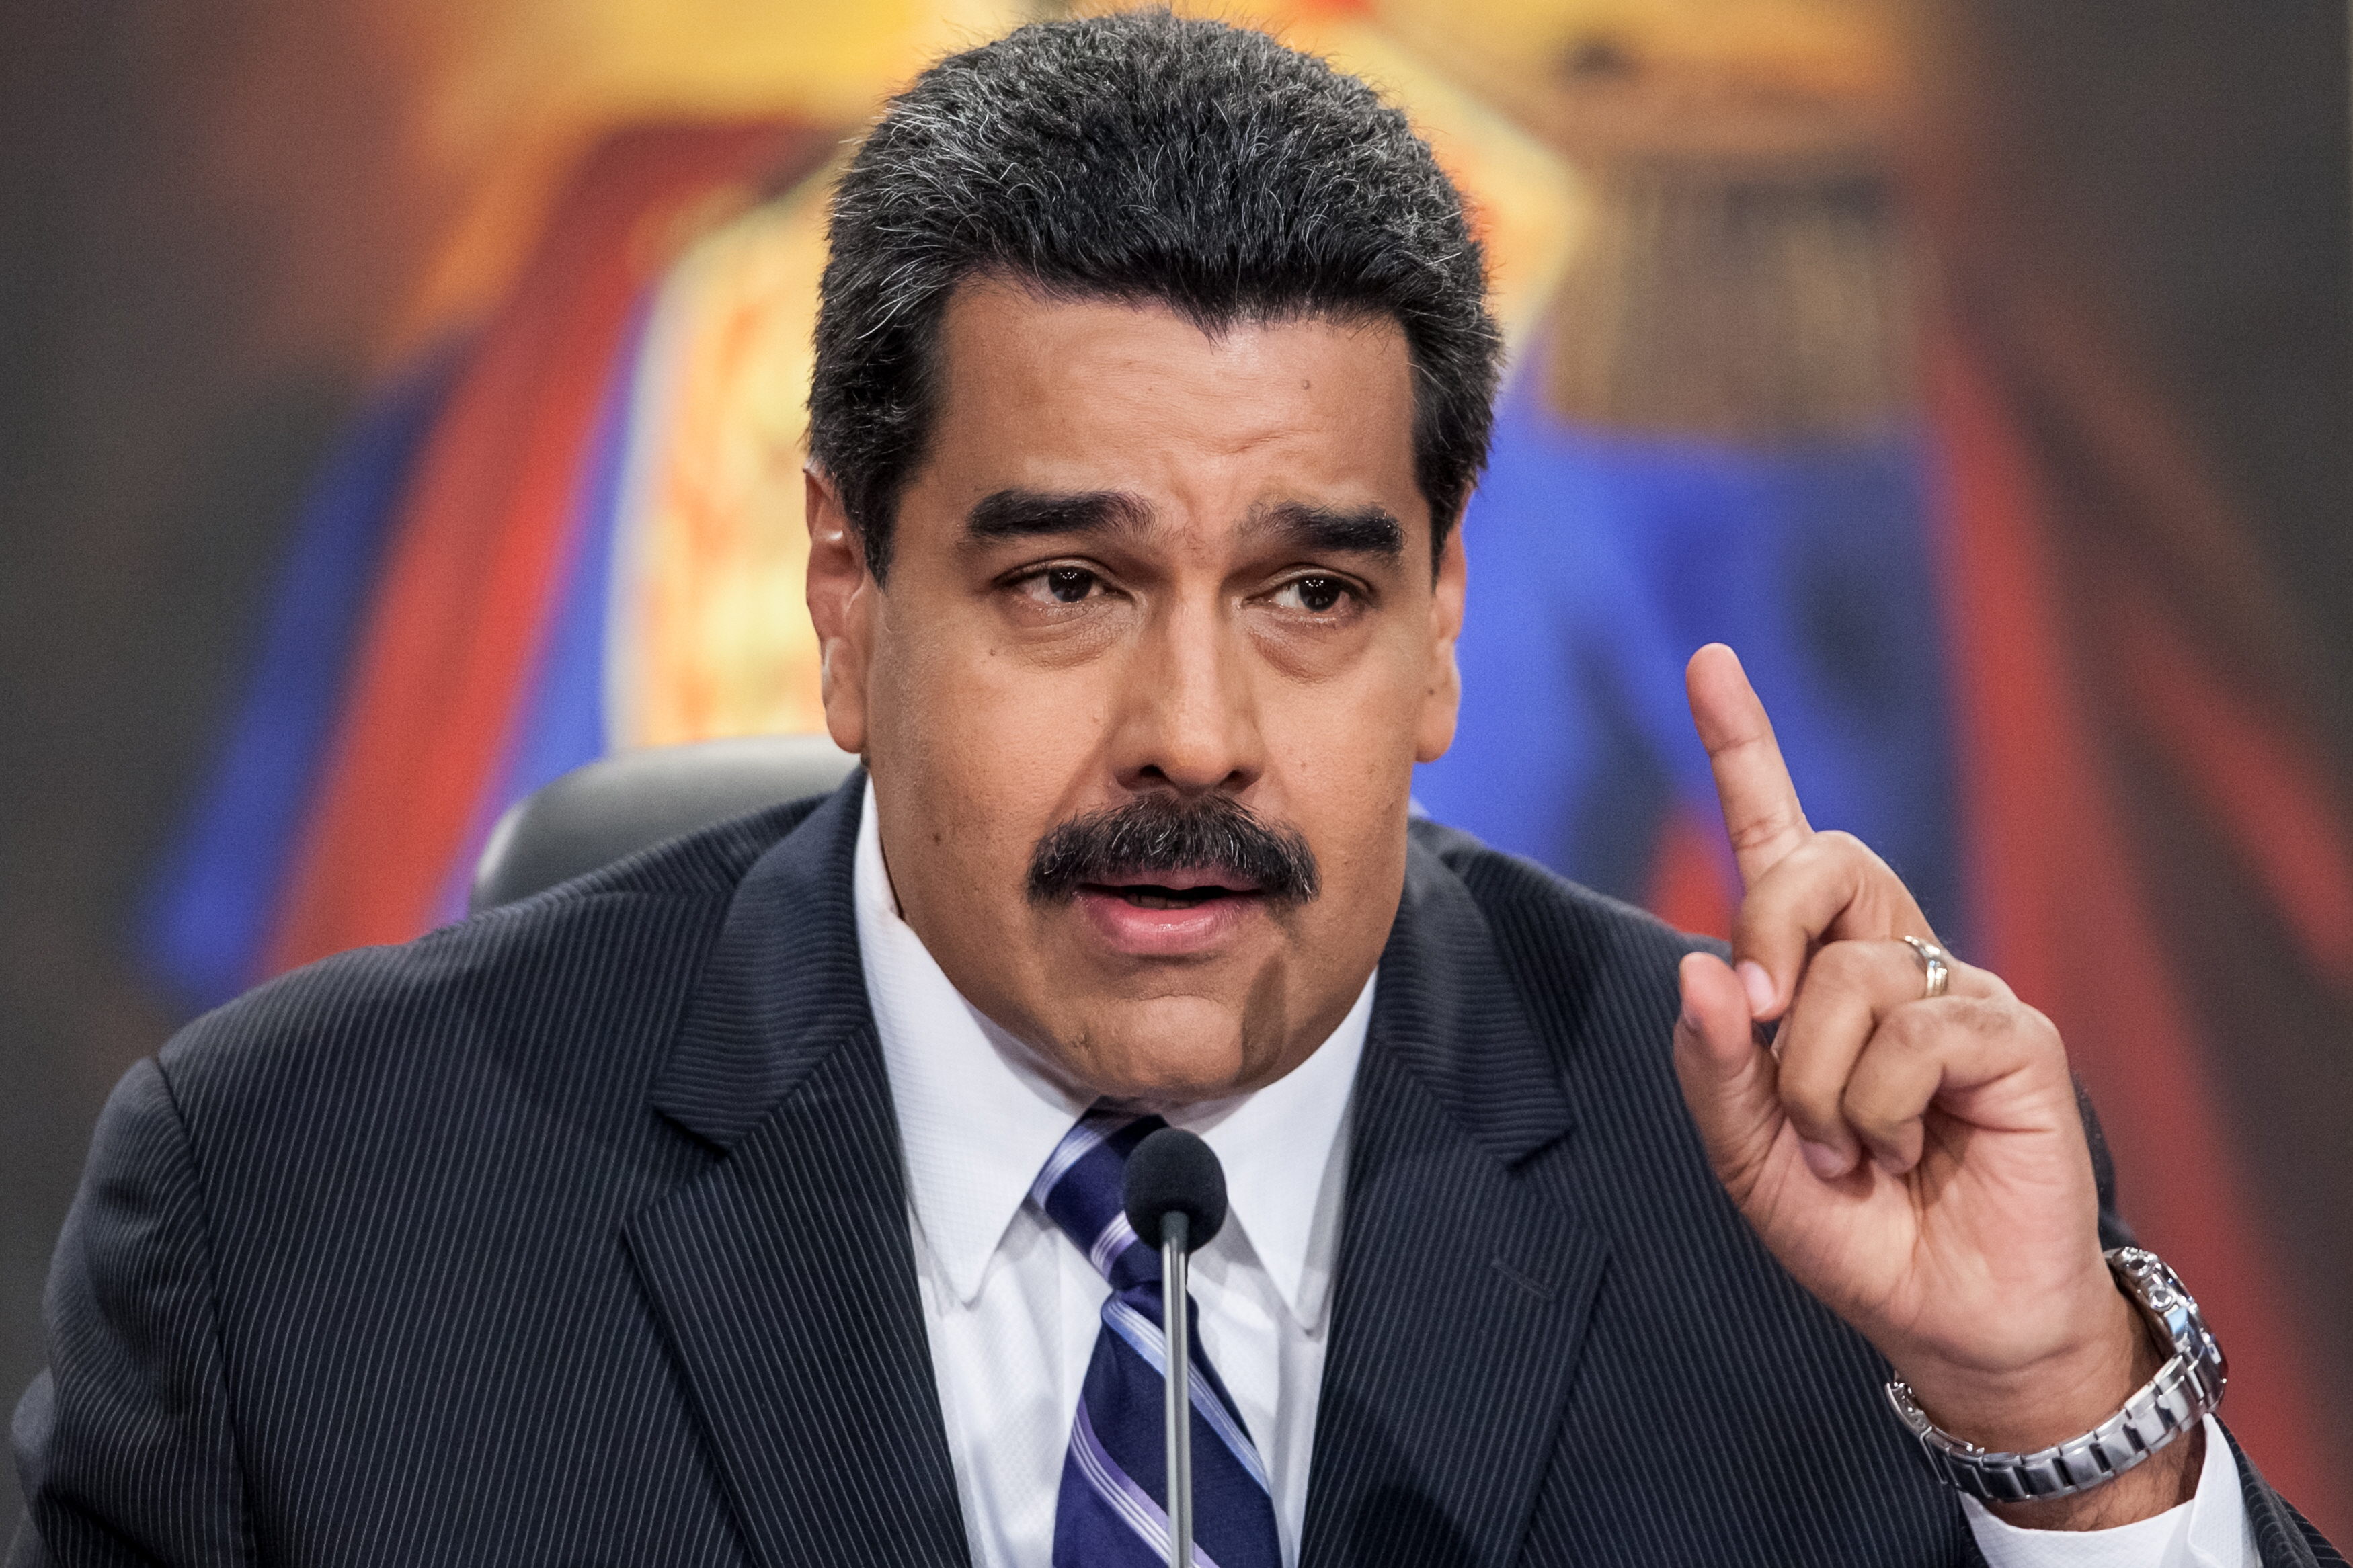 Nelle ultime settimane, la popolarità del presidente della Repubblica, Nicolás Maduro, ha recuperato qualche punto percentuale